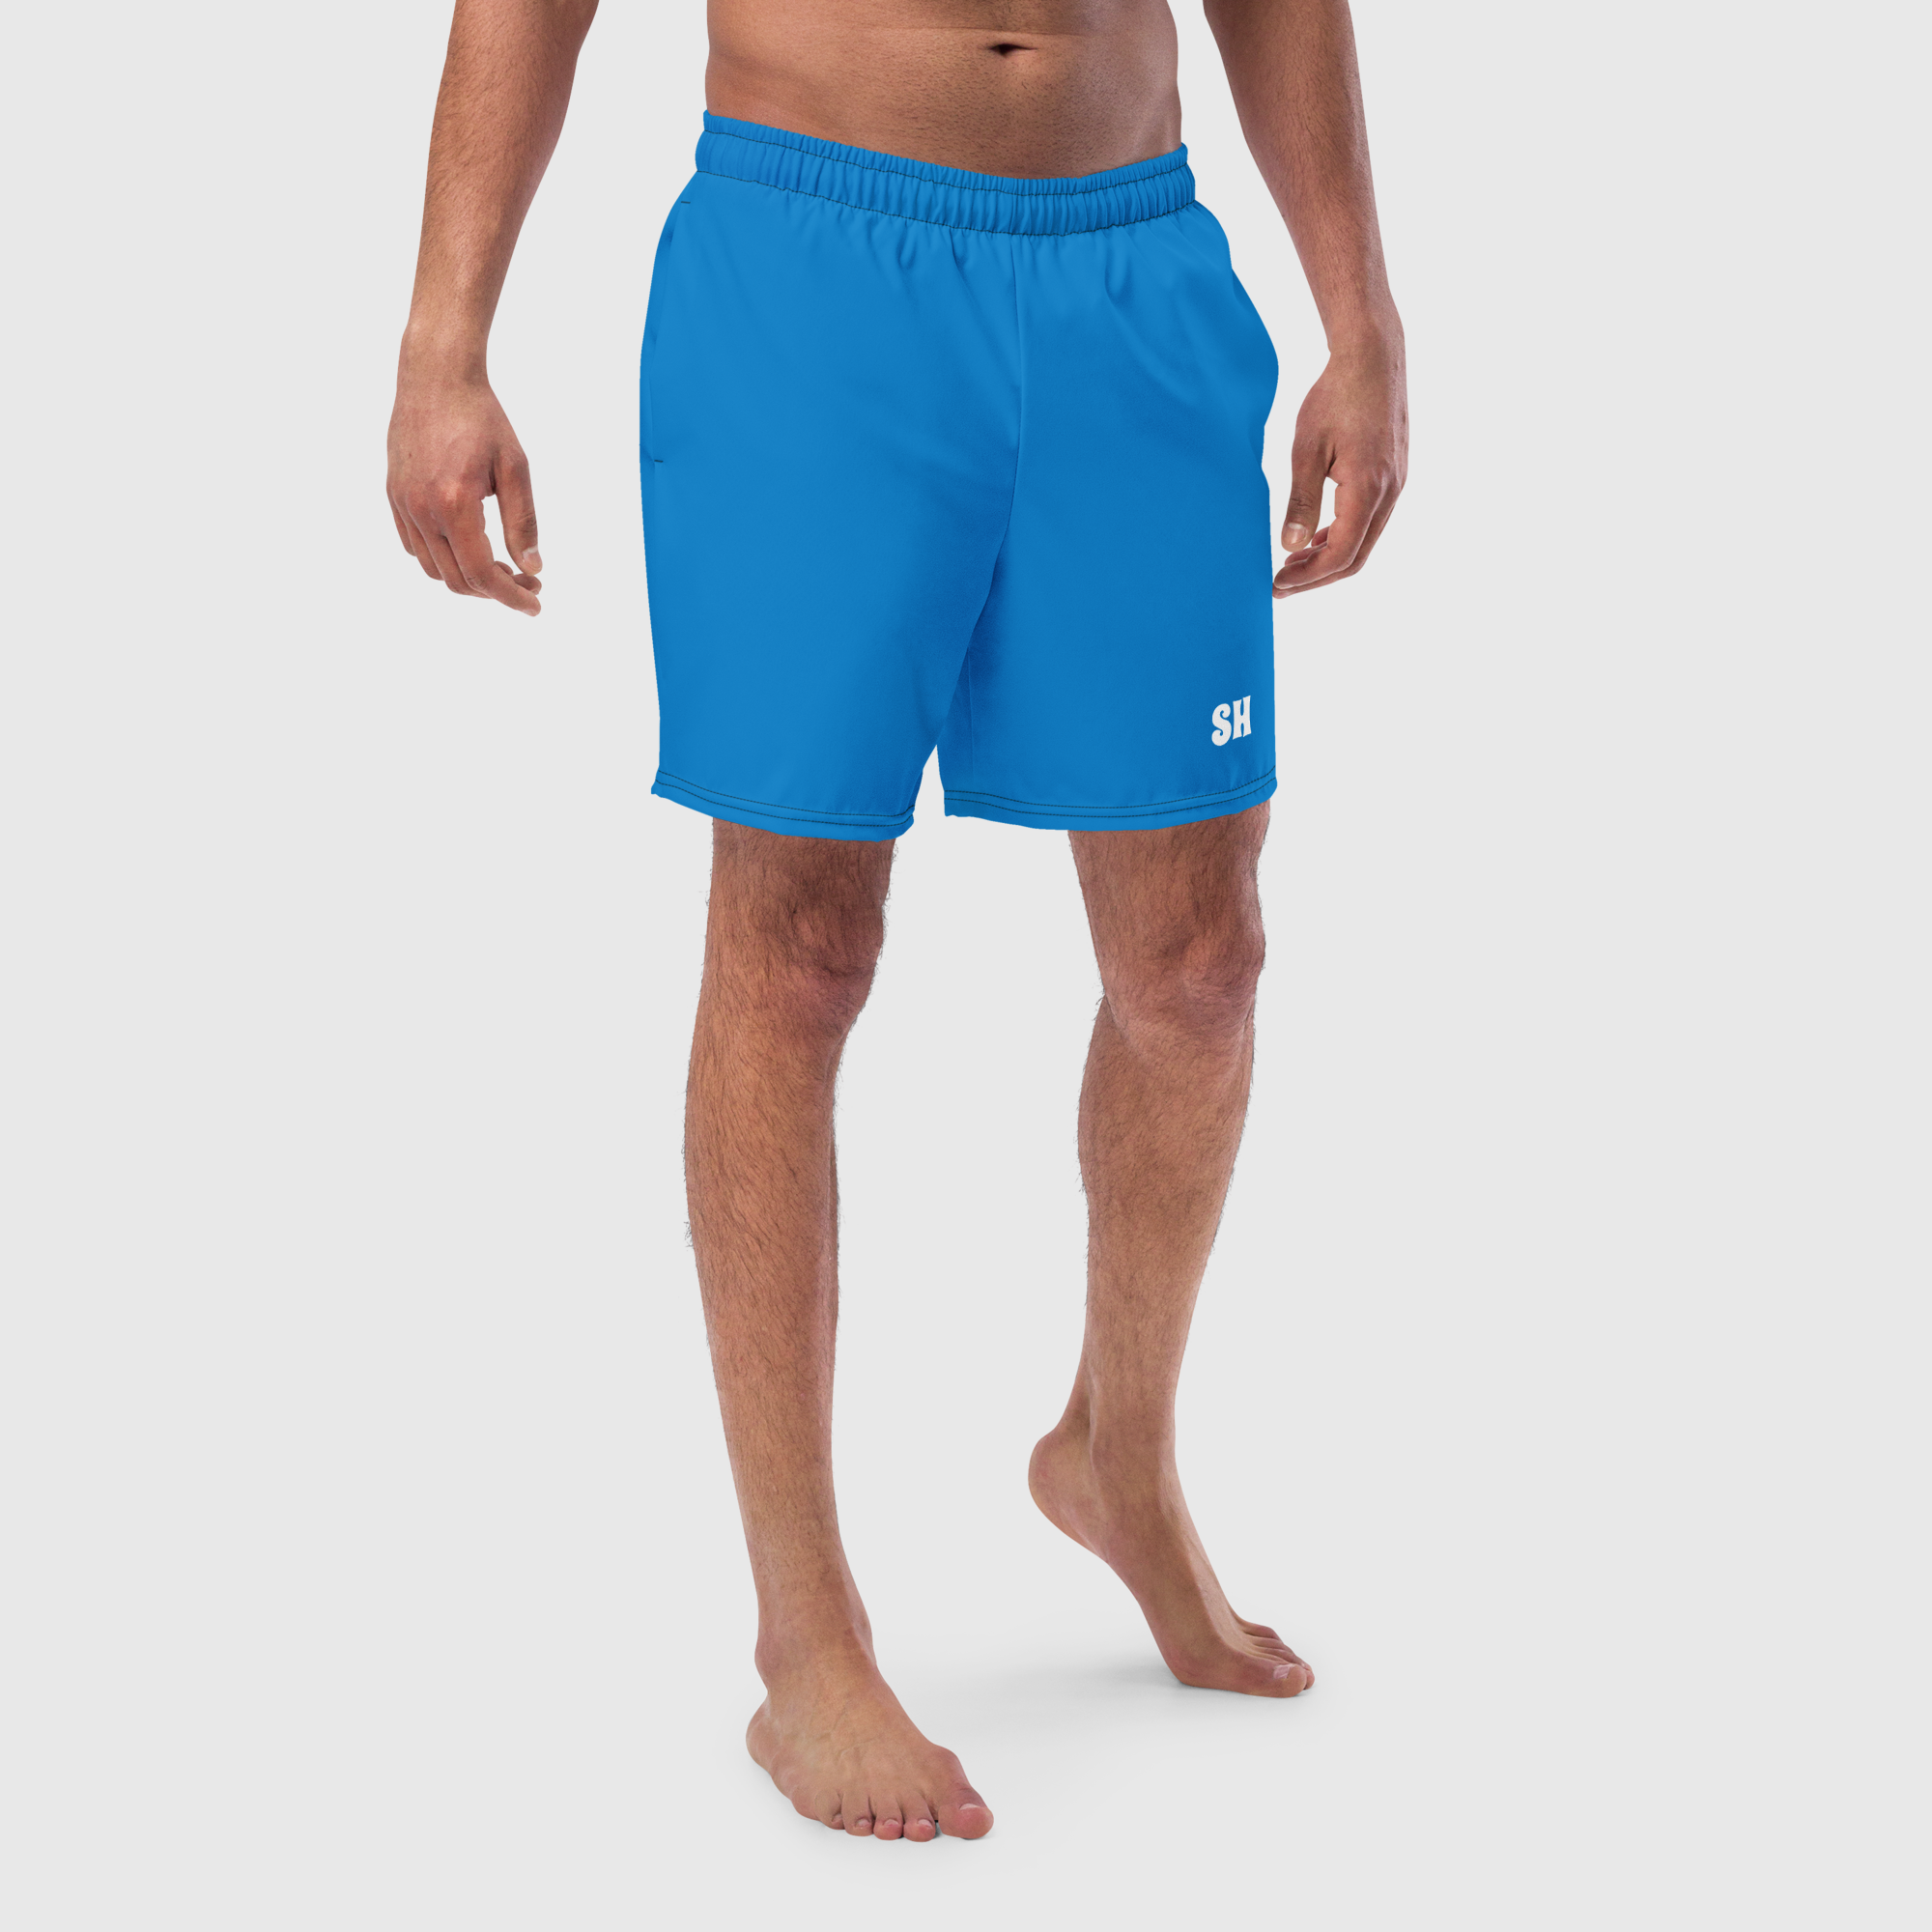 Men's swim trunks - Blue